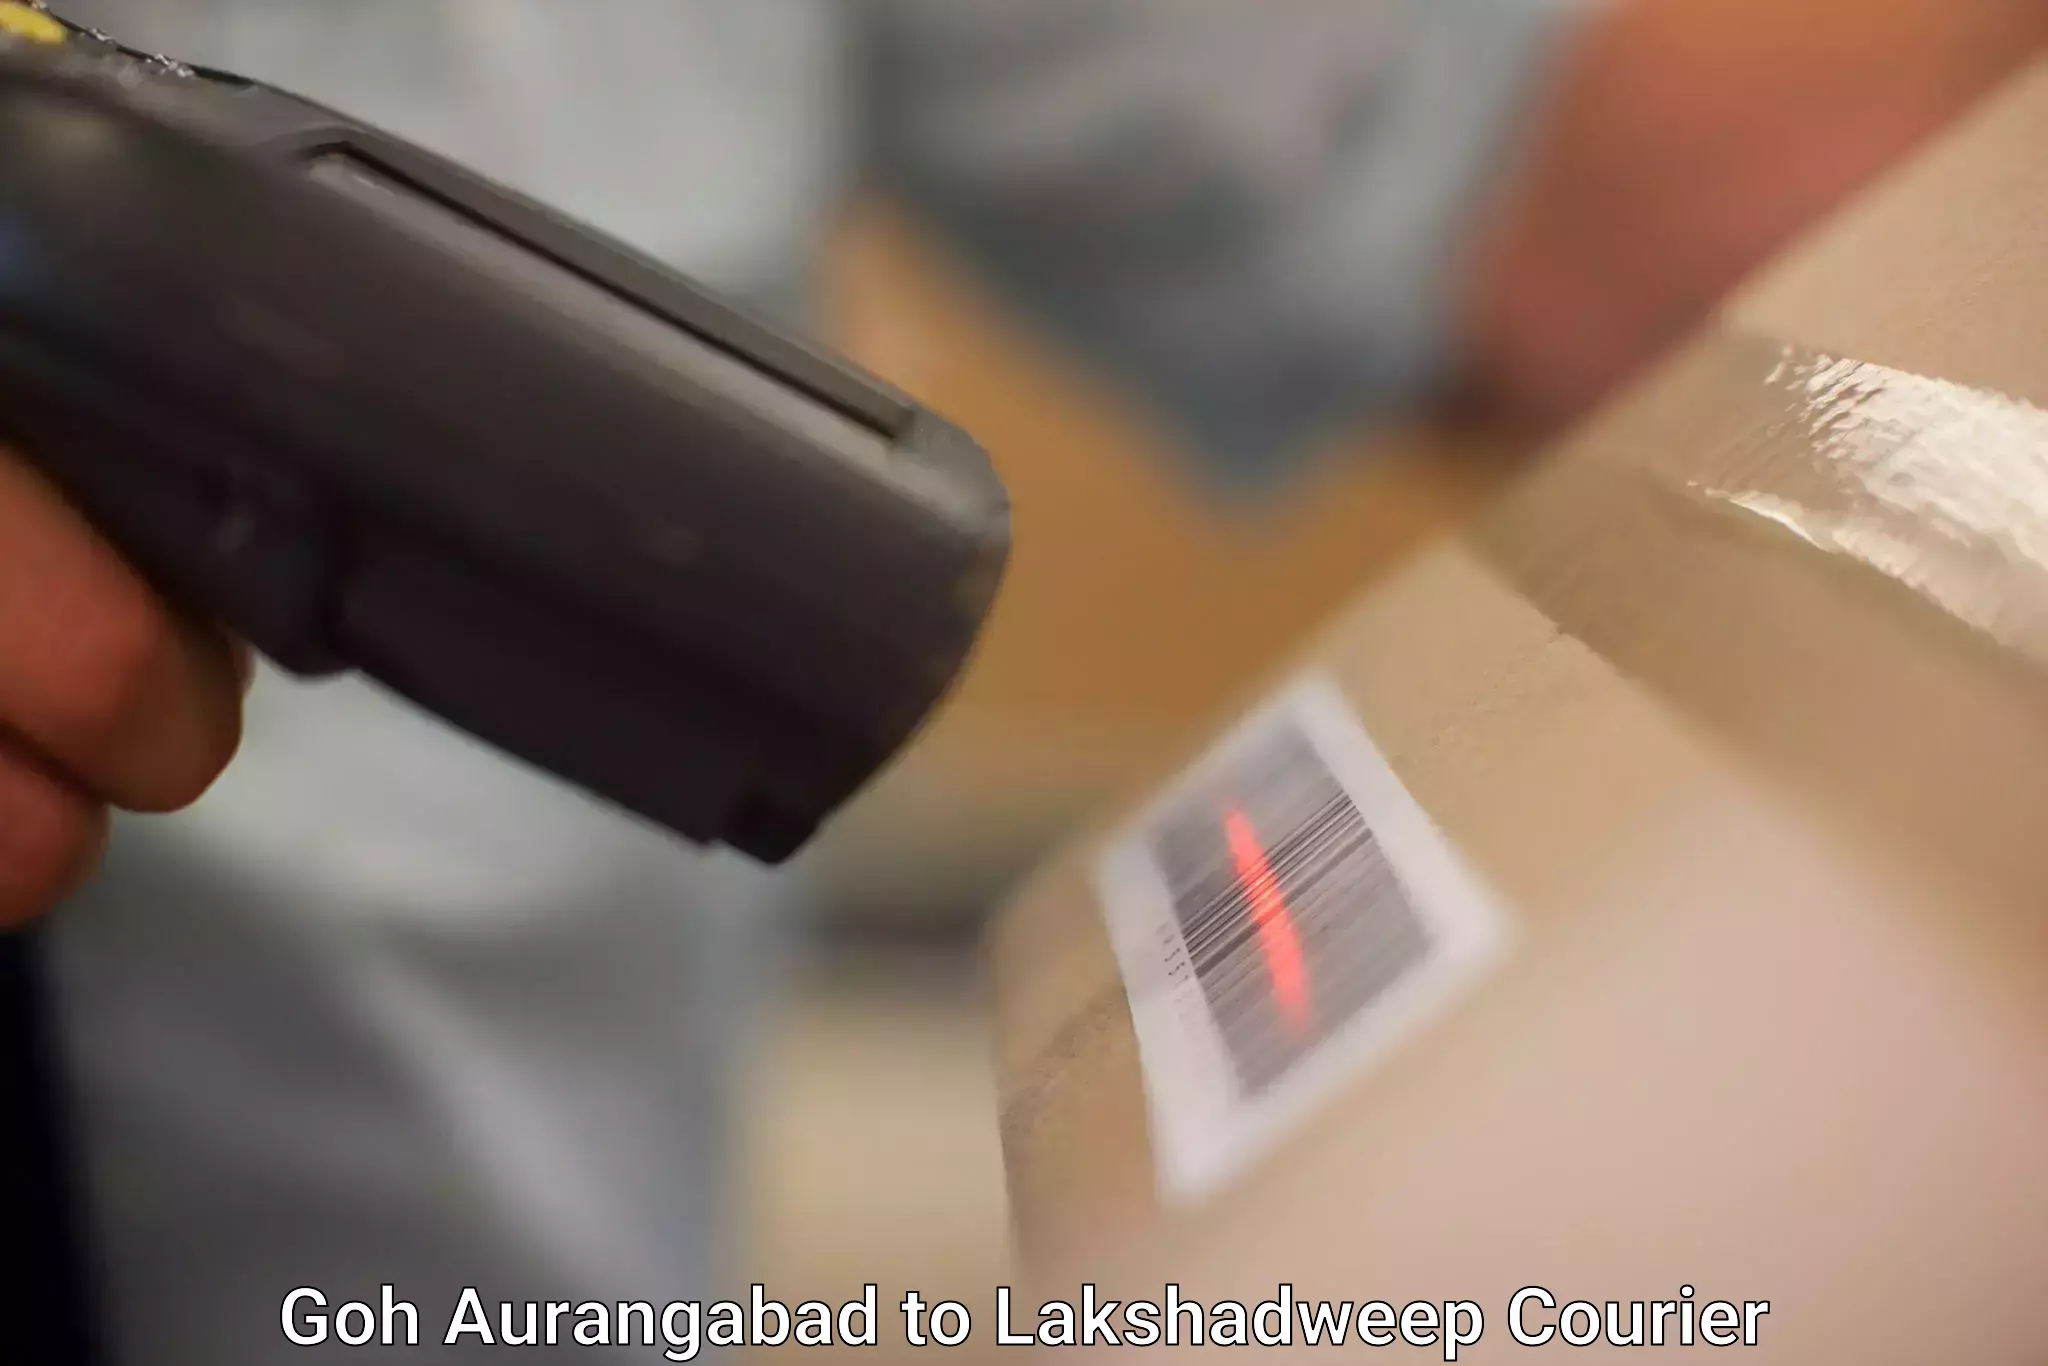 Customized delivery options Goh Aurangabad to Lakshadweep